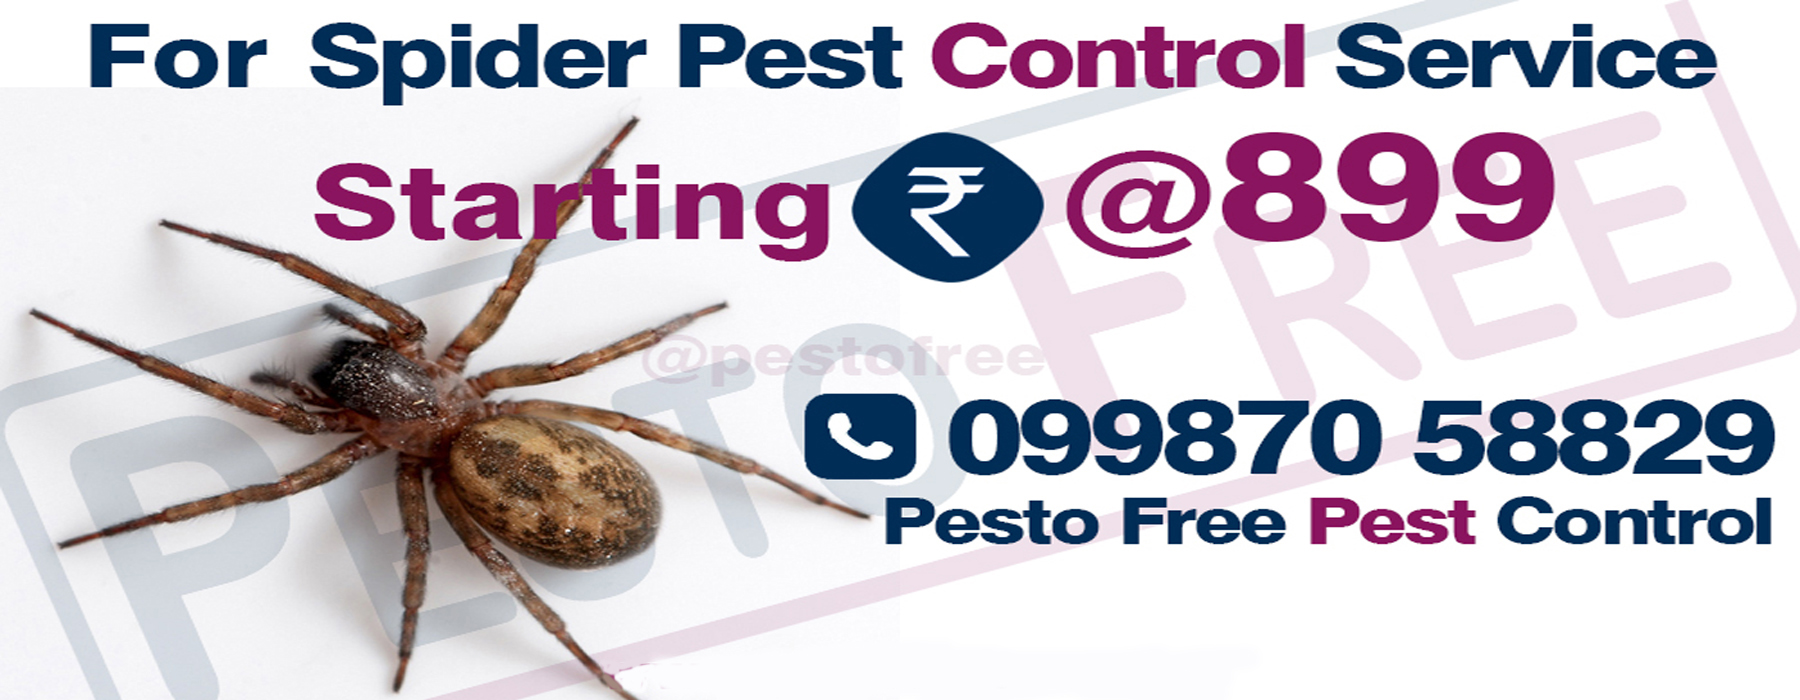 Spider Pest Control in Mumbai